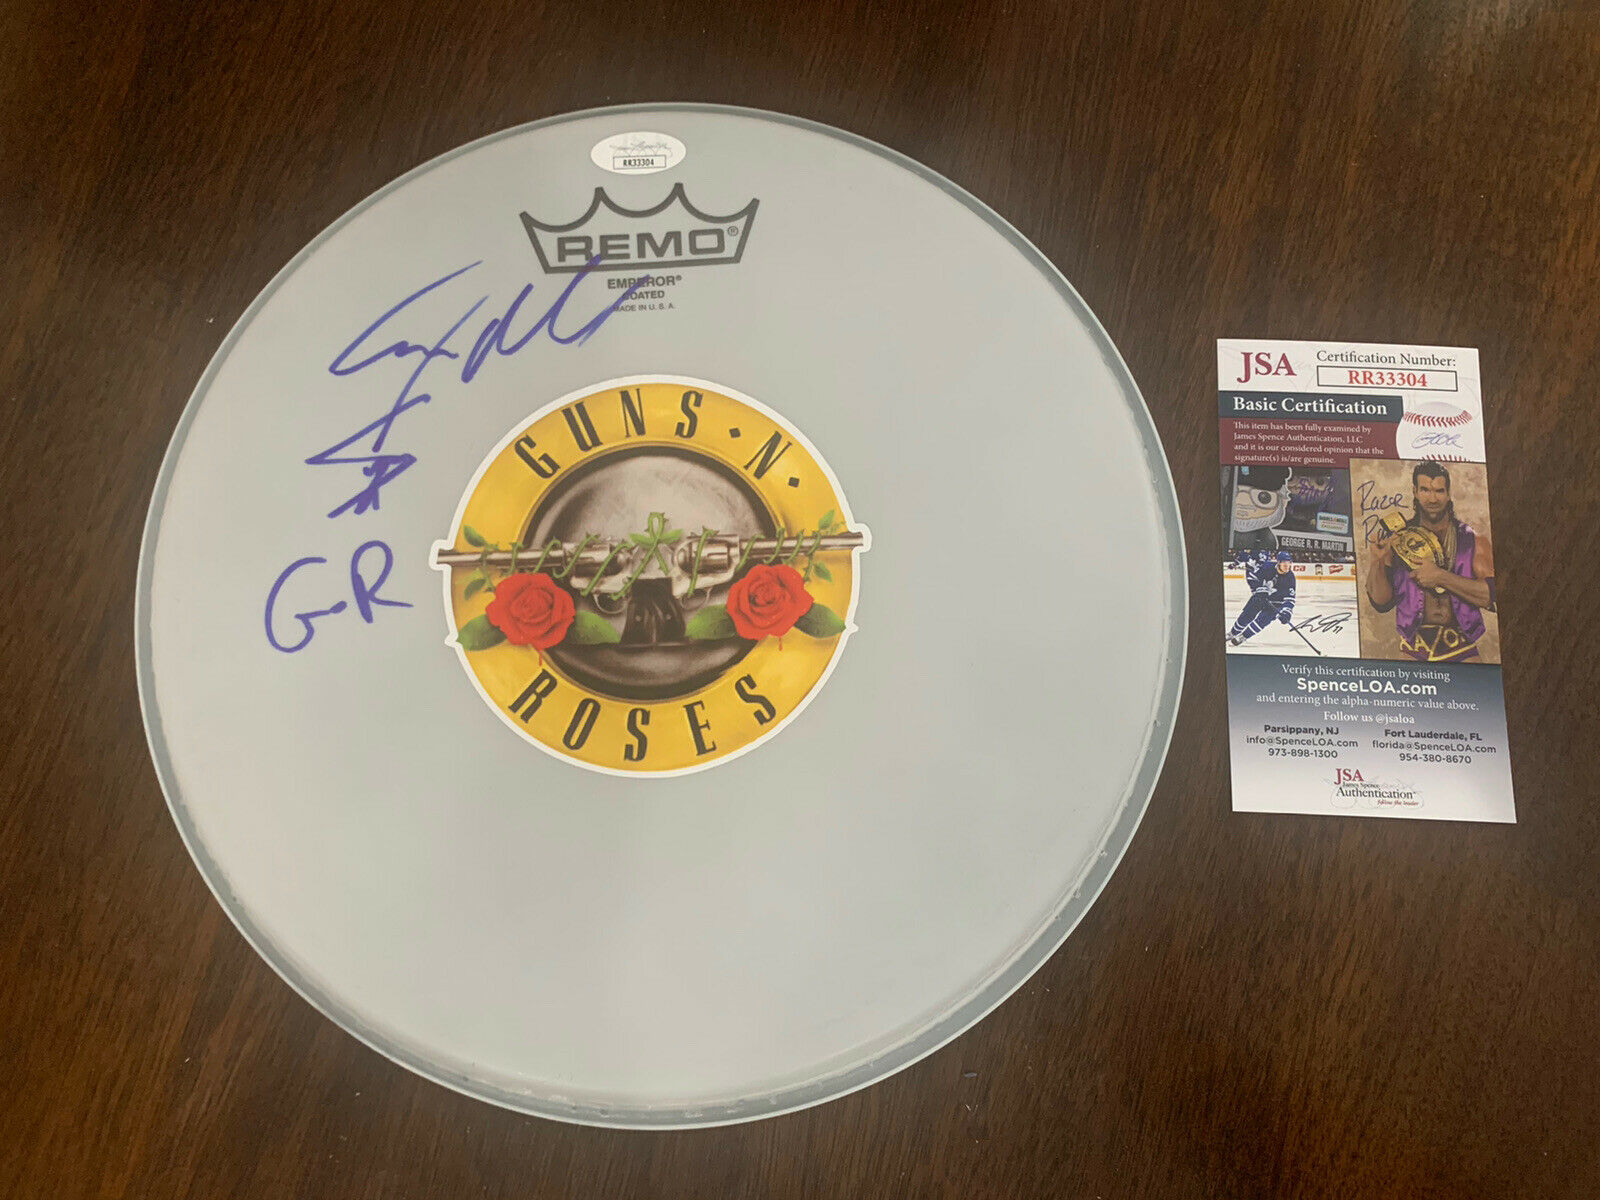 Steven Adler Signed Autographed 10” Remo Drumhead Guns N Roses Jsa Coa #33304